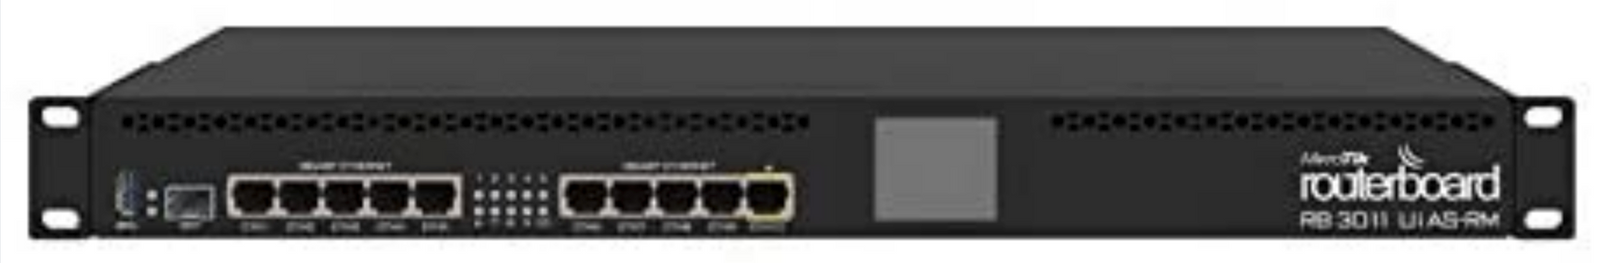 Mikrotik RB3011UIAS-RM Cable Router Gigabit Ethernet